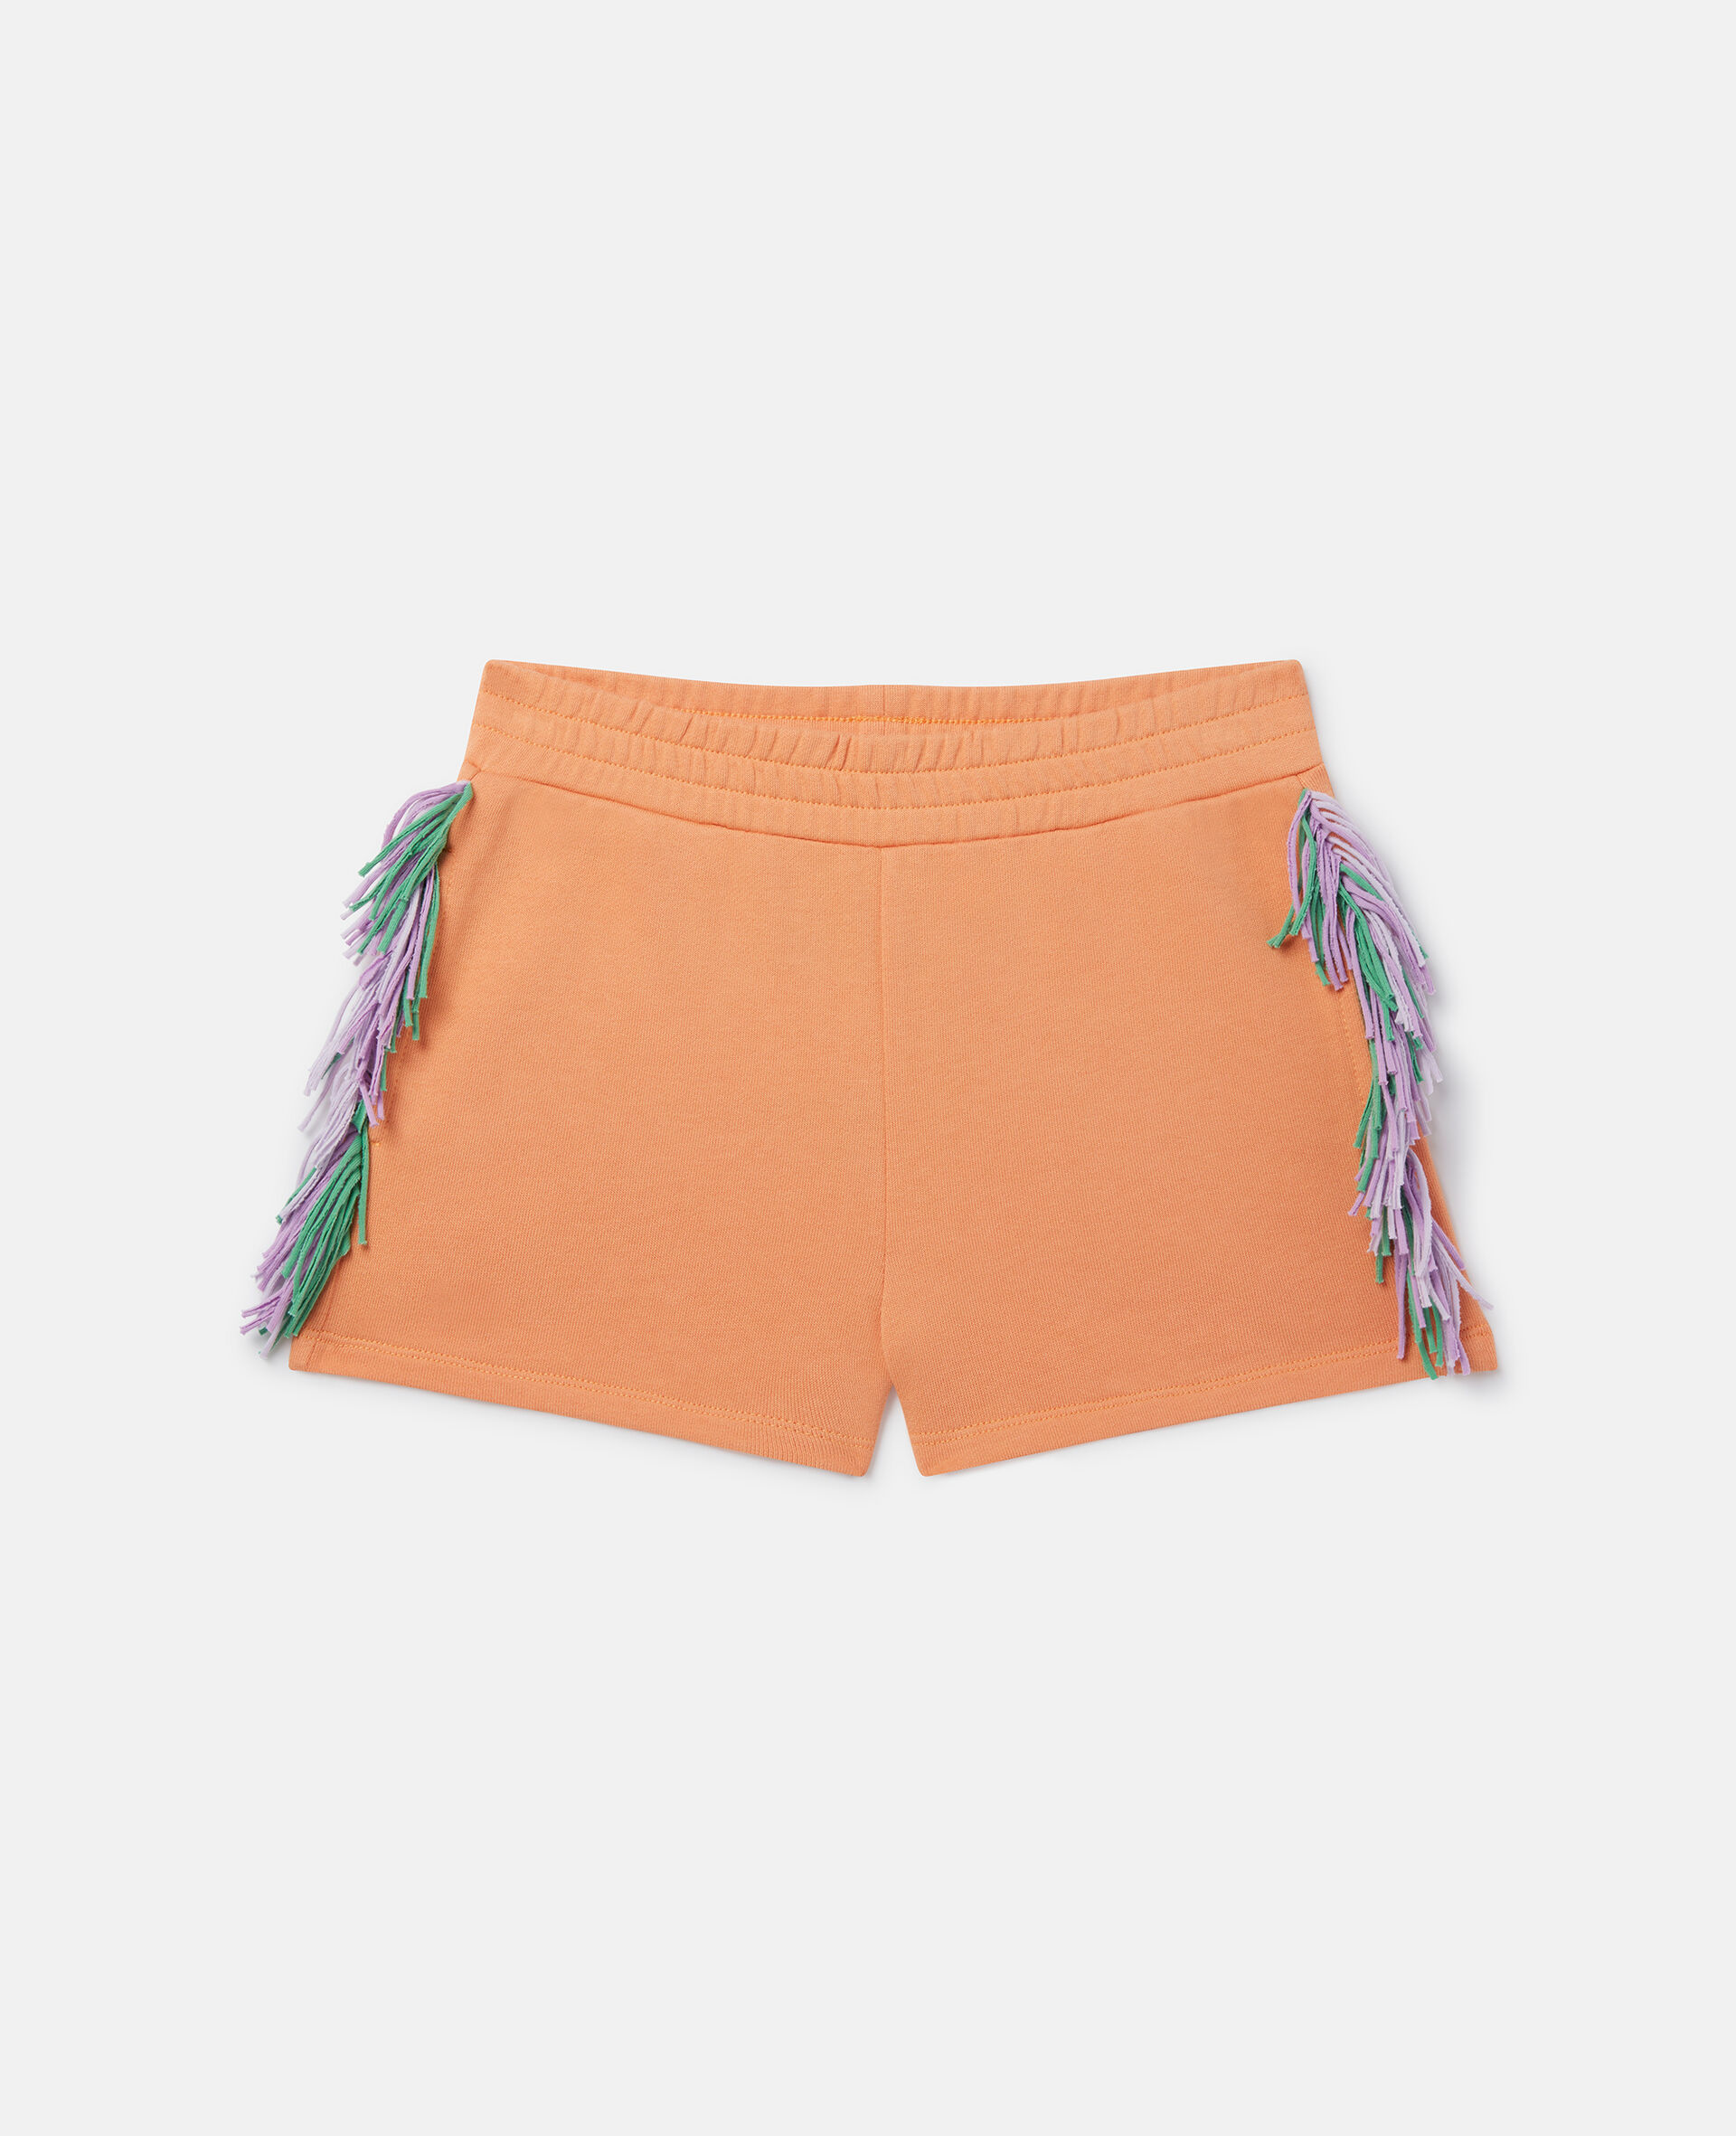 Shorts mit Fransen-Orange-medium